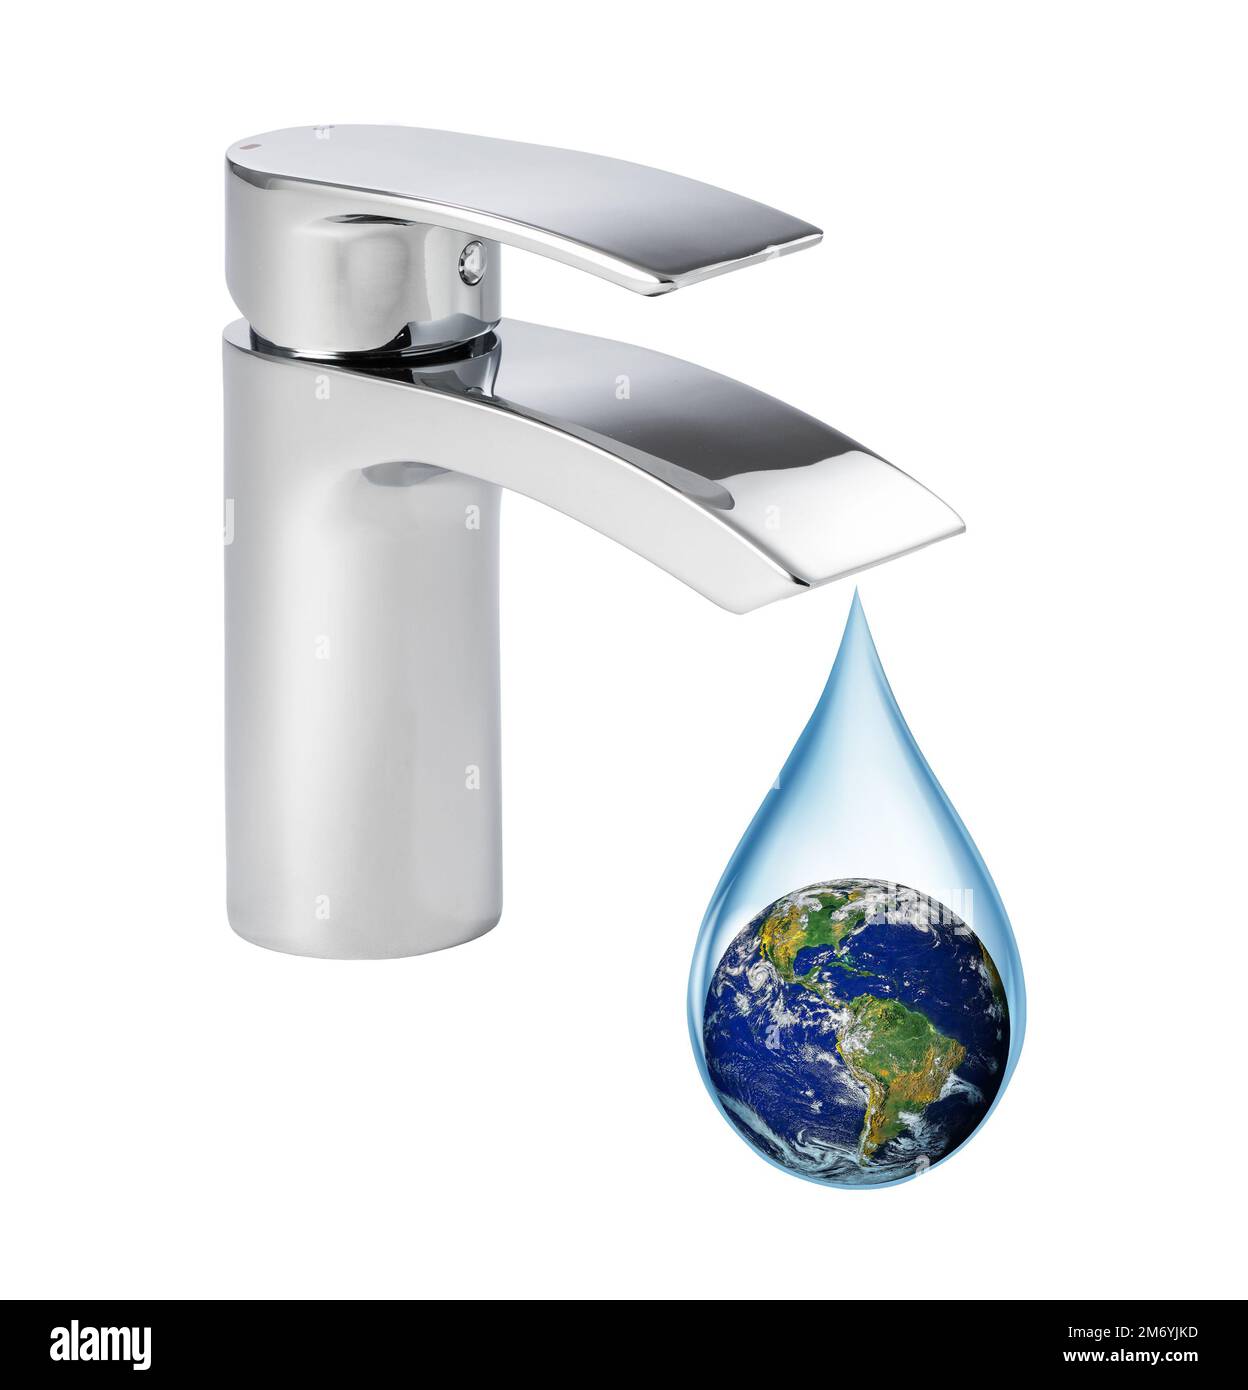 Concetto di mancanza di acqua sulla terra. Terra in una goccia di acqua che gocciola dal rubinetto. Elementi di questa immagine forniti dalla NASA. Foto Stock